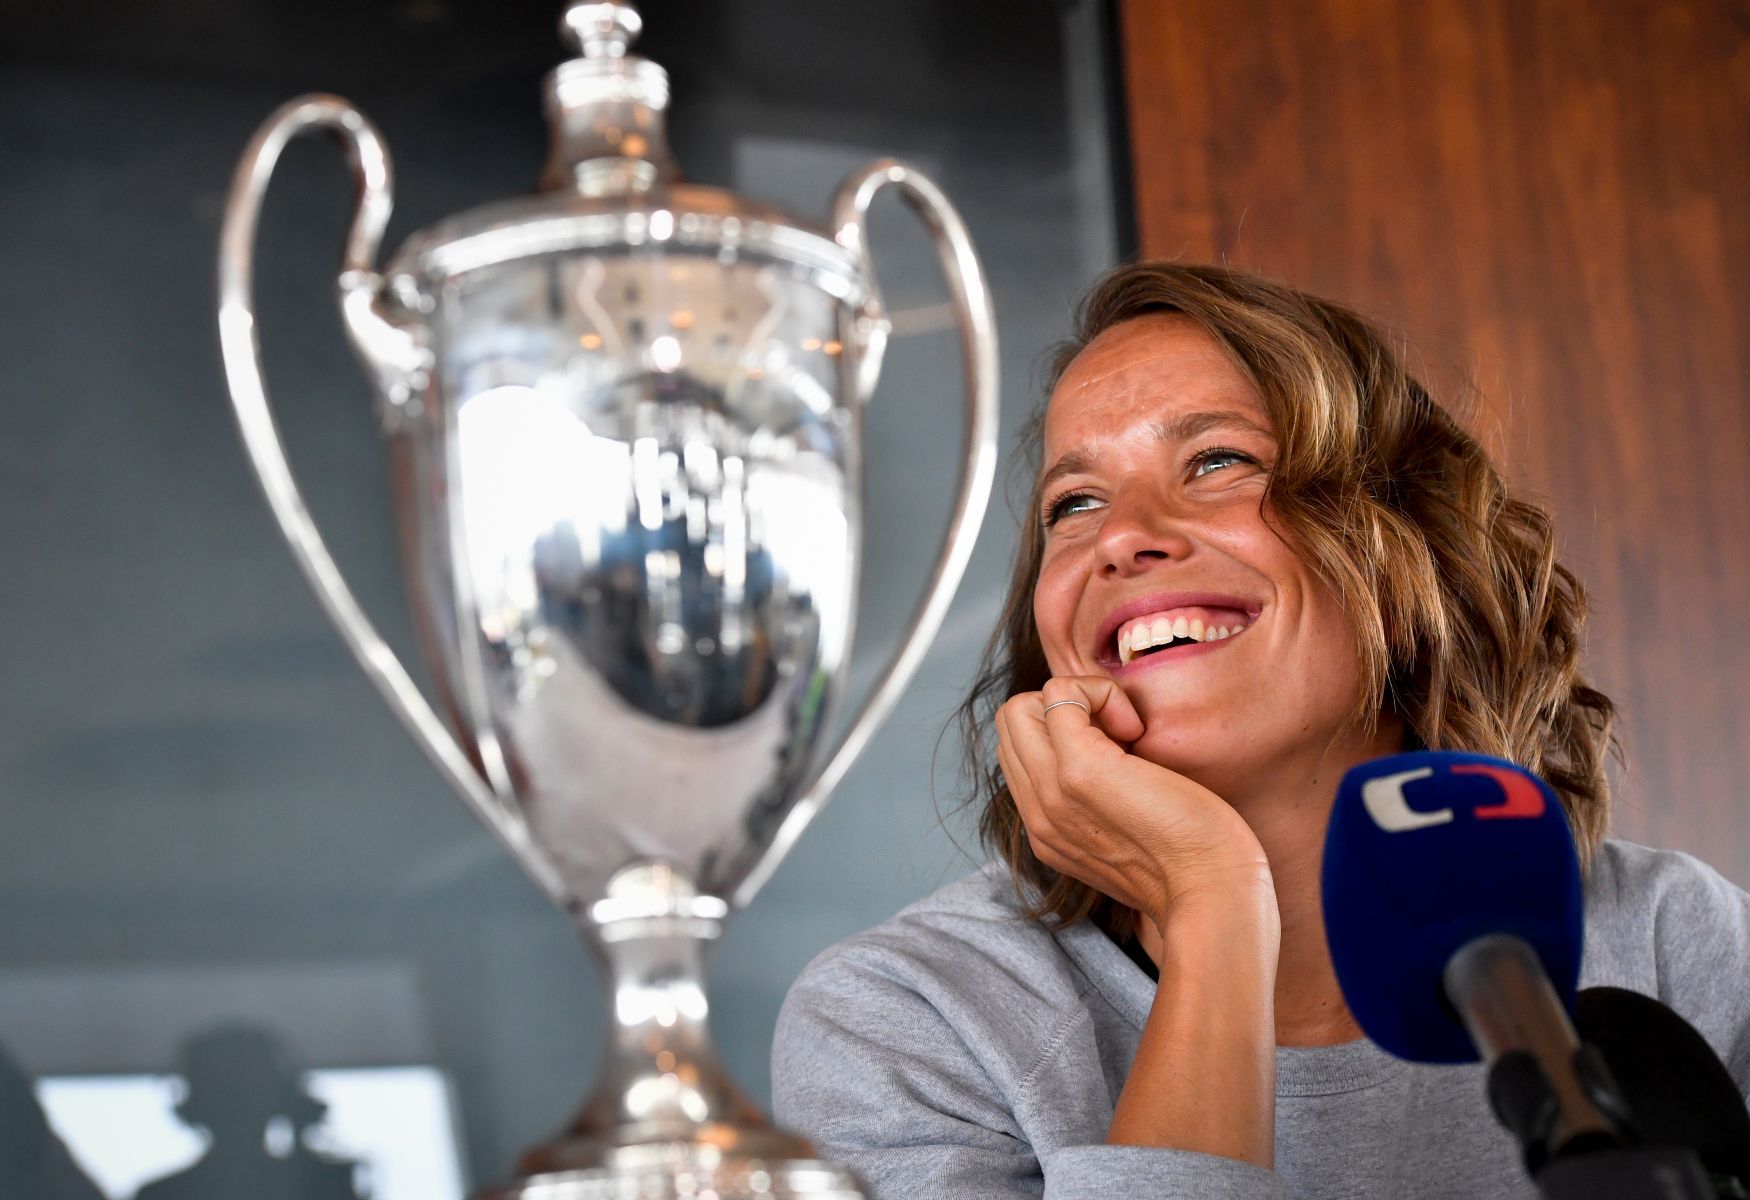 Barbora Strýcová s wimbledonskou trofejí 2019